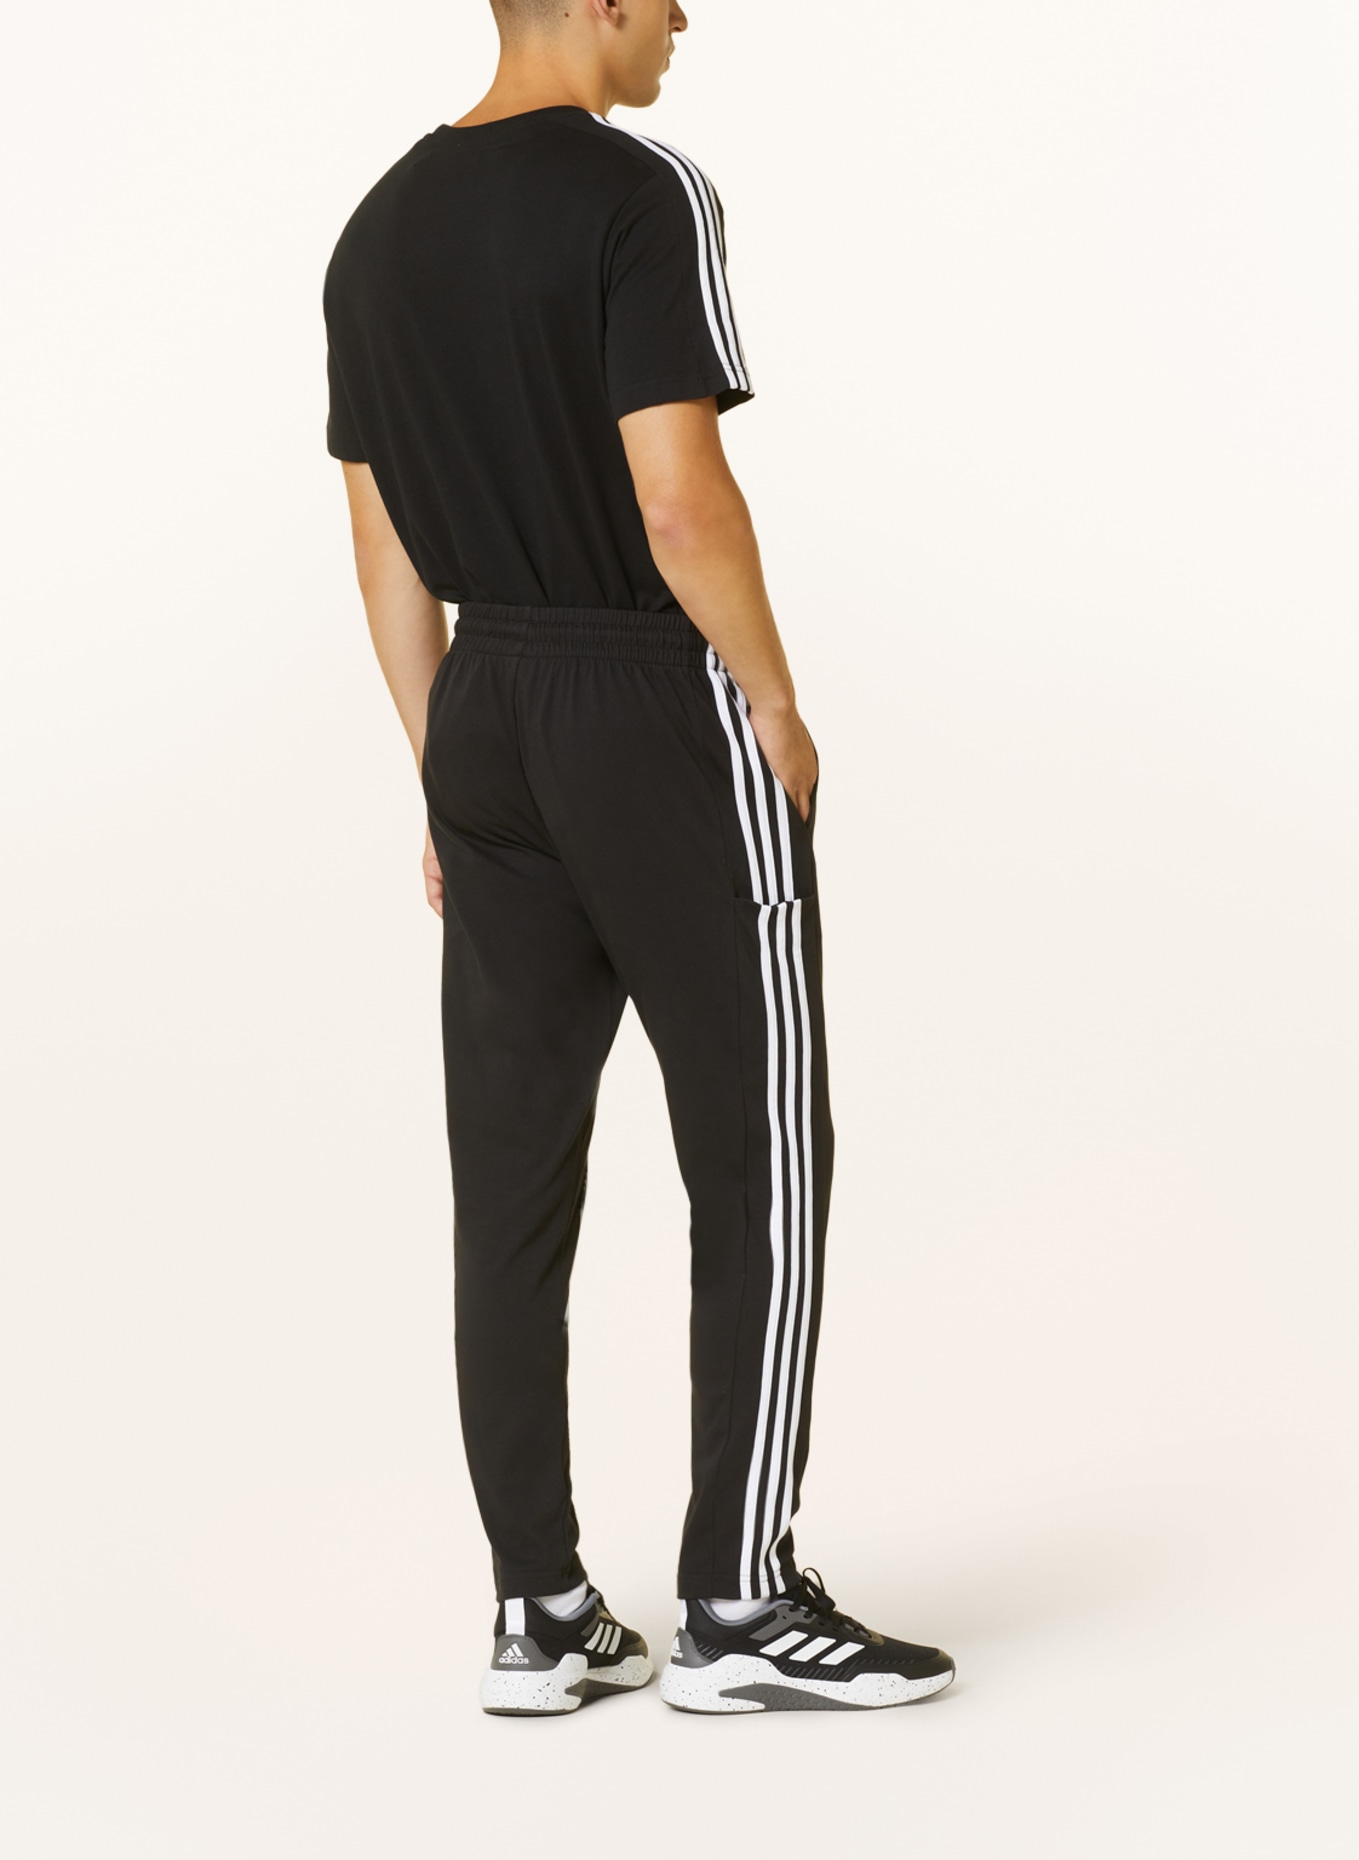 Calza Adidas Moda Dama 3s Leg Negro/Blanco - S/C — Menpi